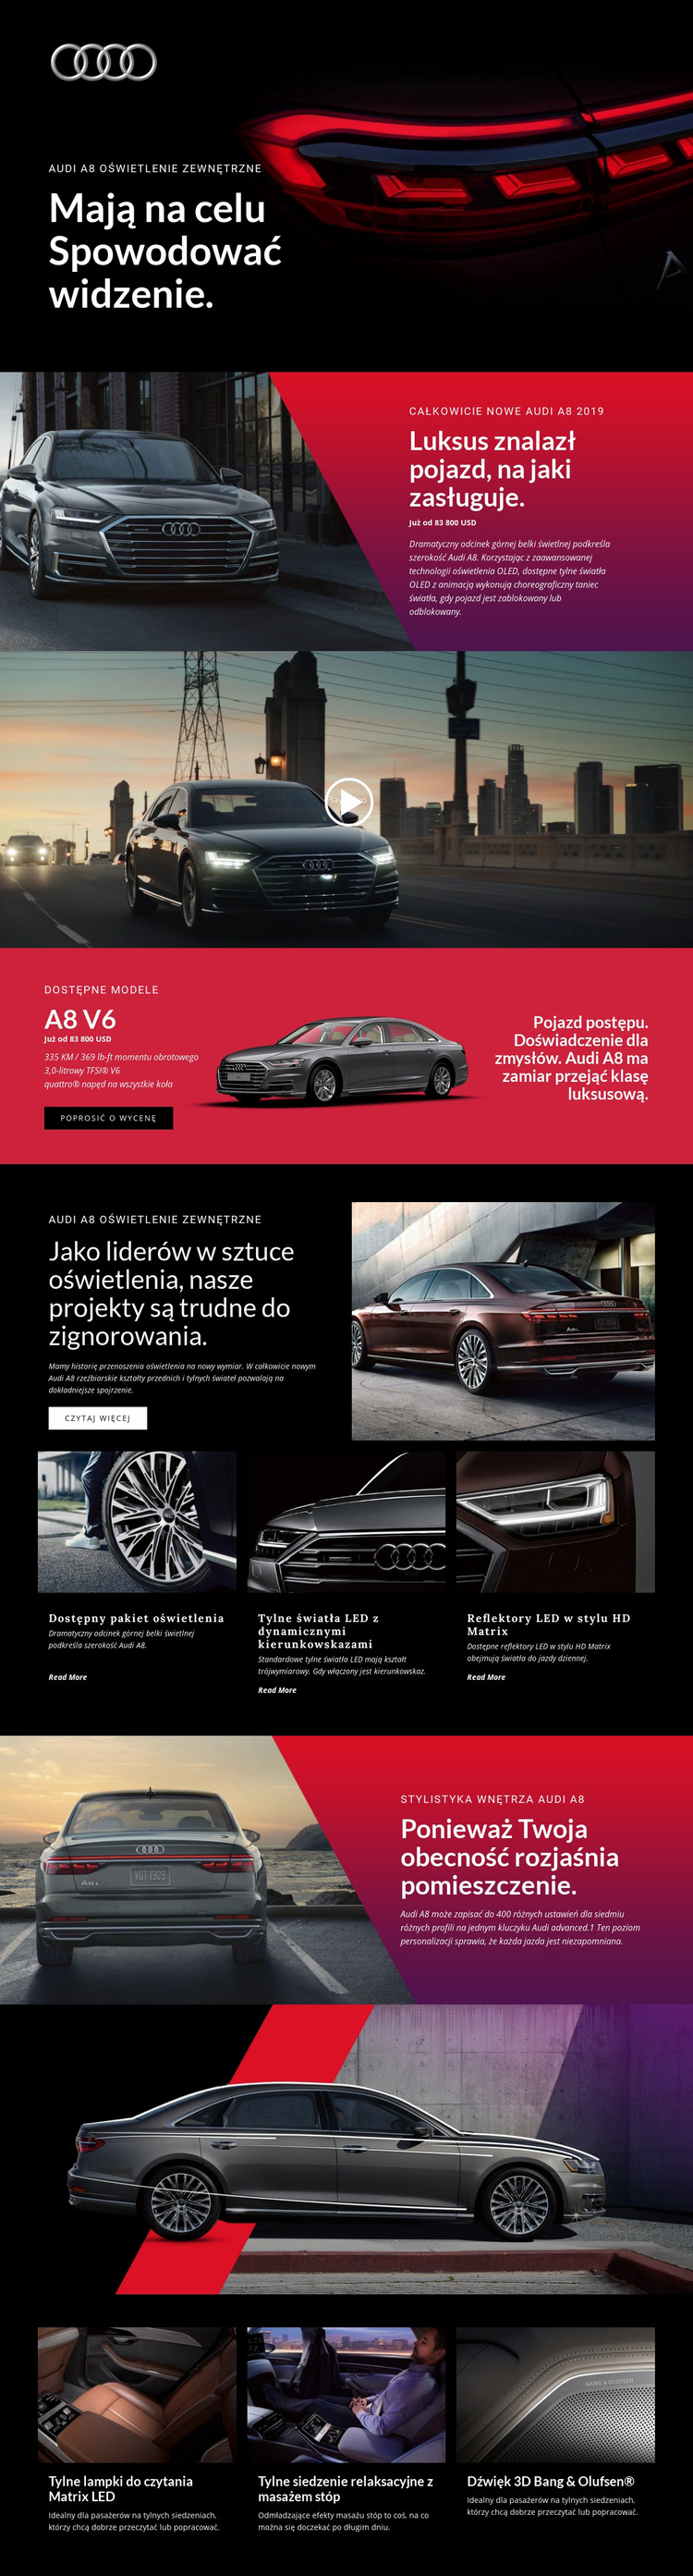 Luksusowe samochody Audi Szablon Joomla